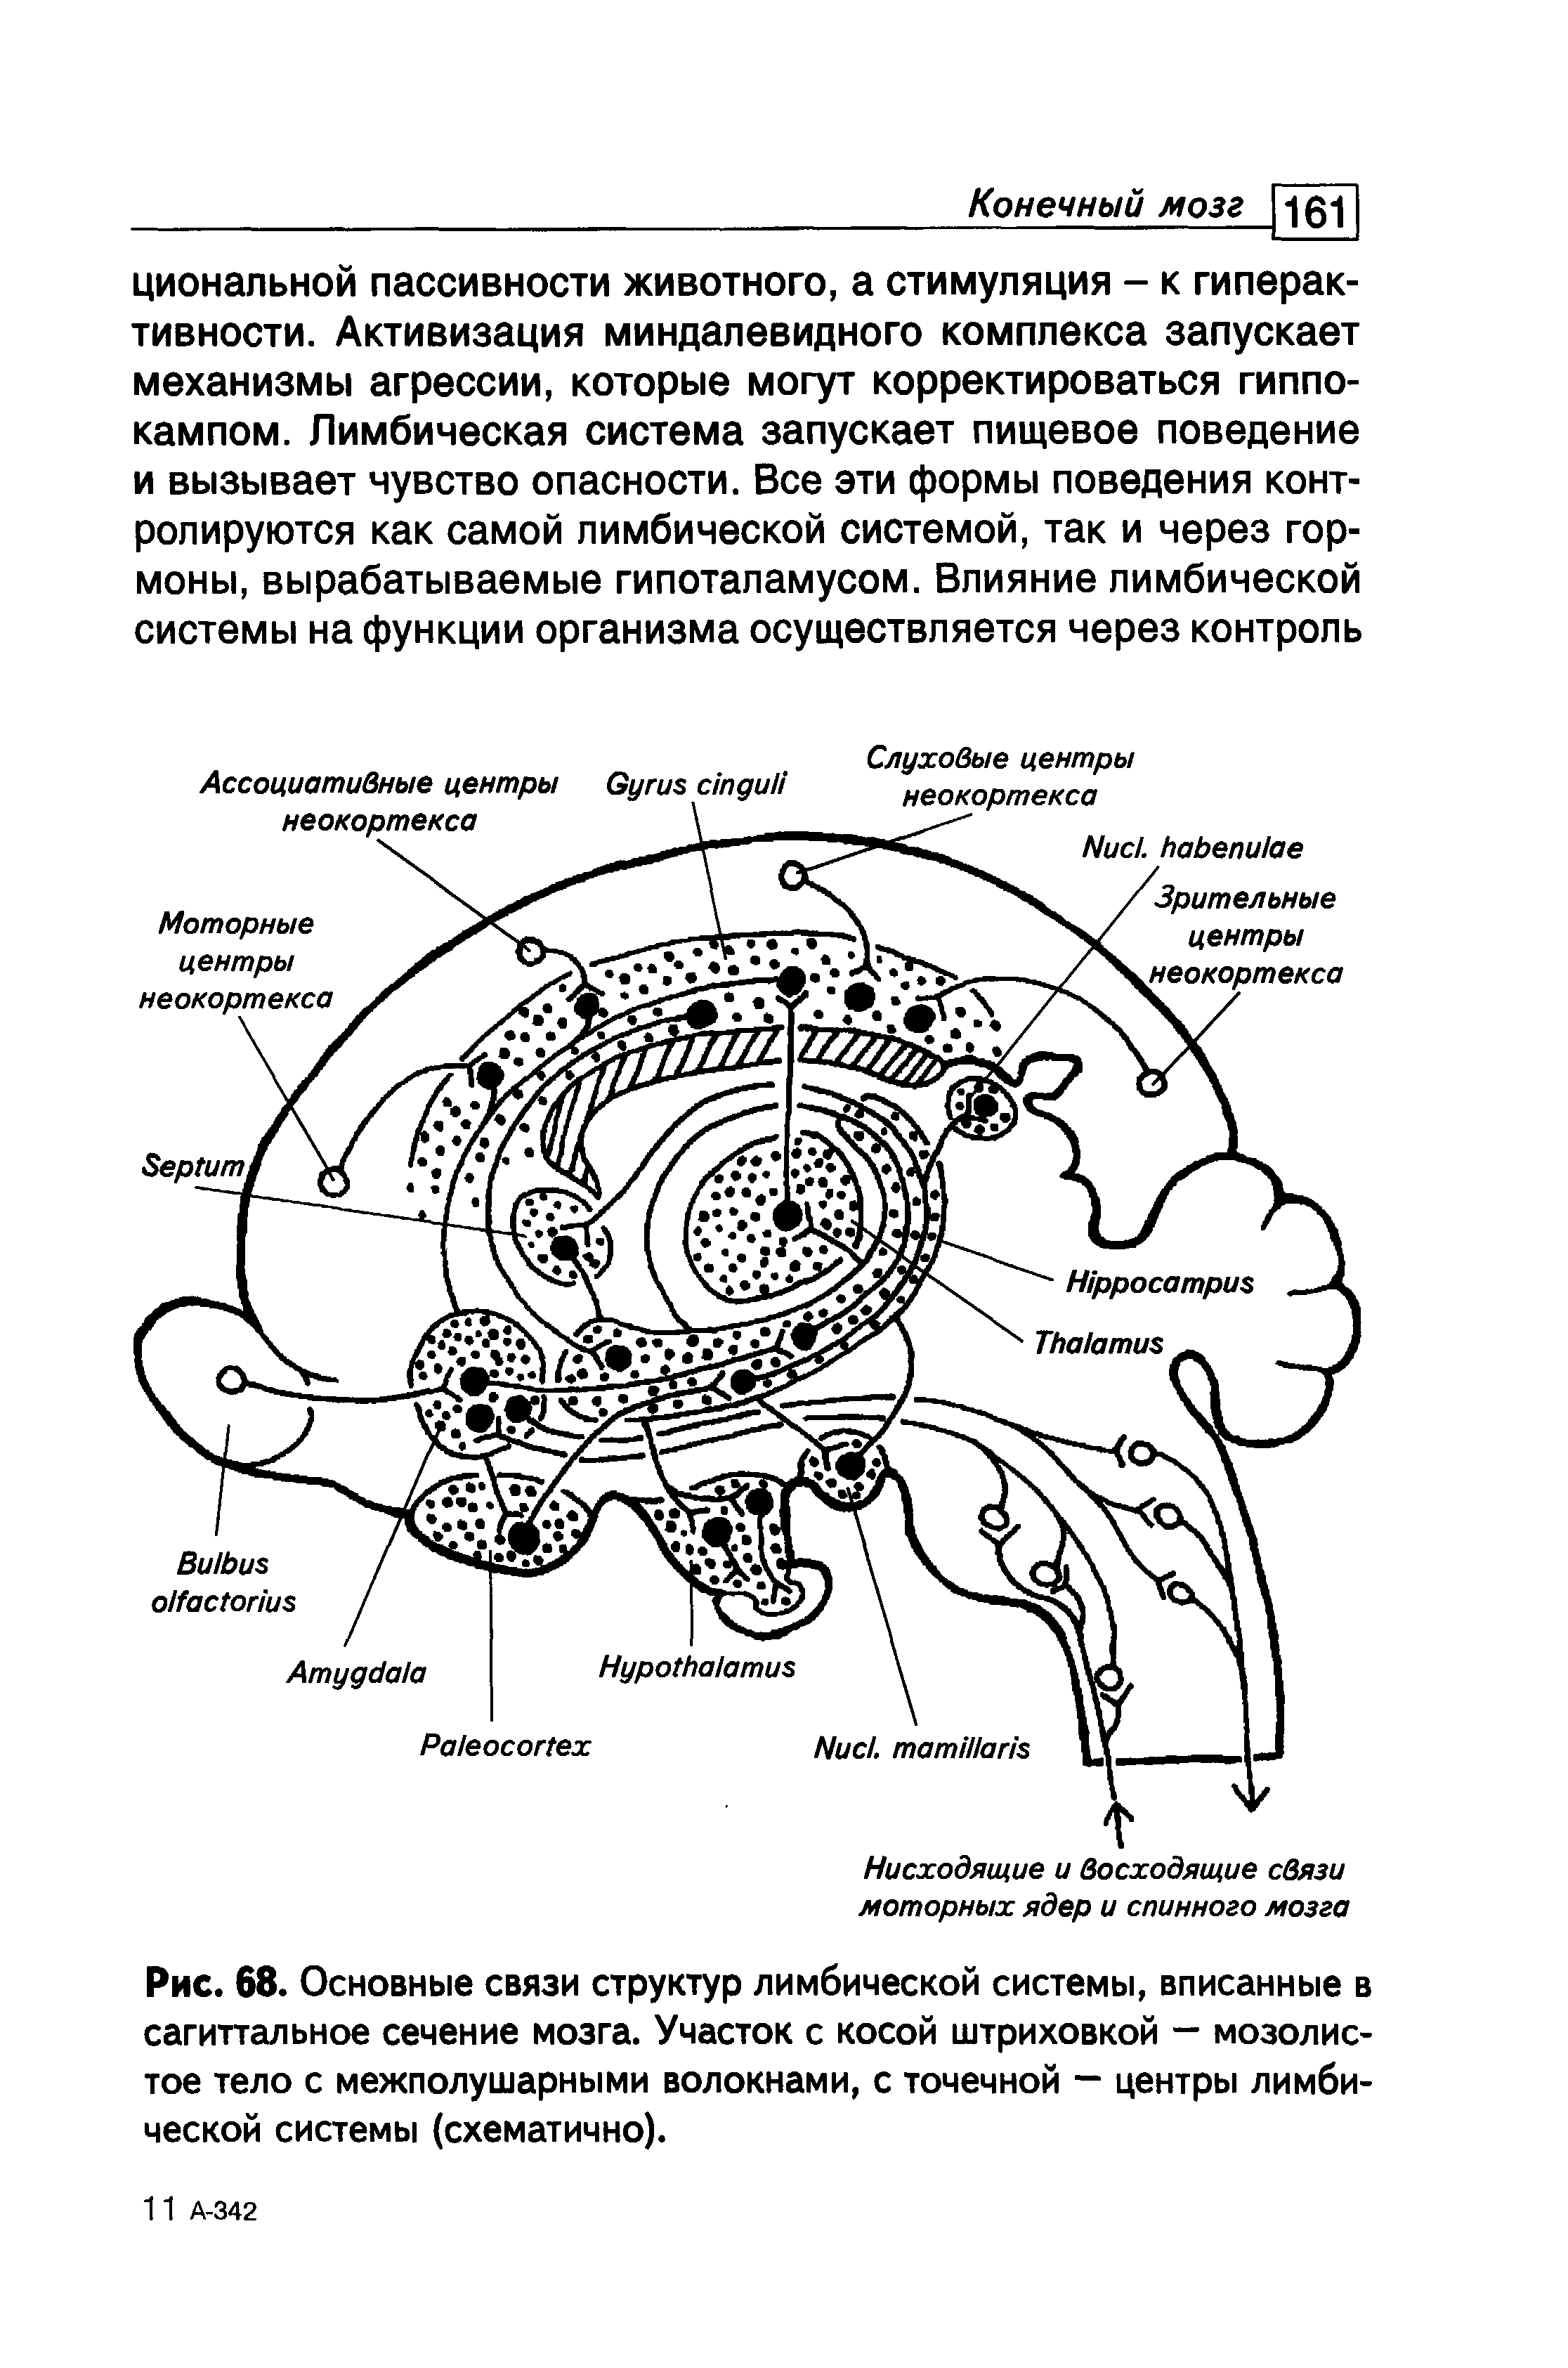 Рис. 68. Основные связи структур лимбической системы, вписанные в сагиттальное сечение мозга. Участок с косой штриховкой — мозолистое тело с межполушарными волокнами, с точечной — центры лимбической системы (схематично).